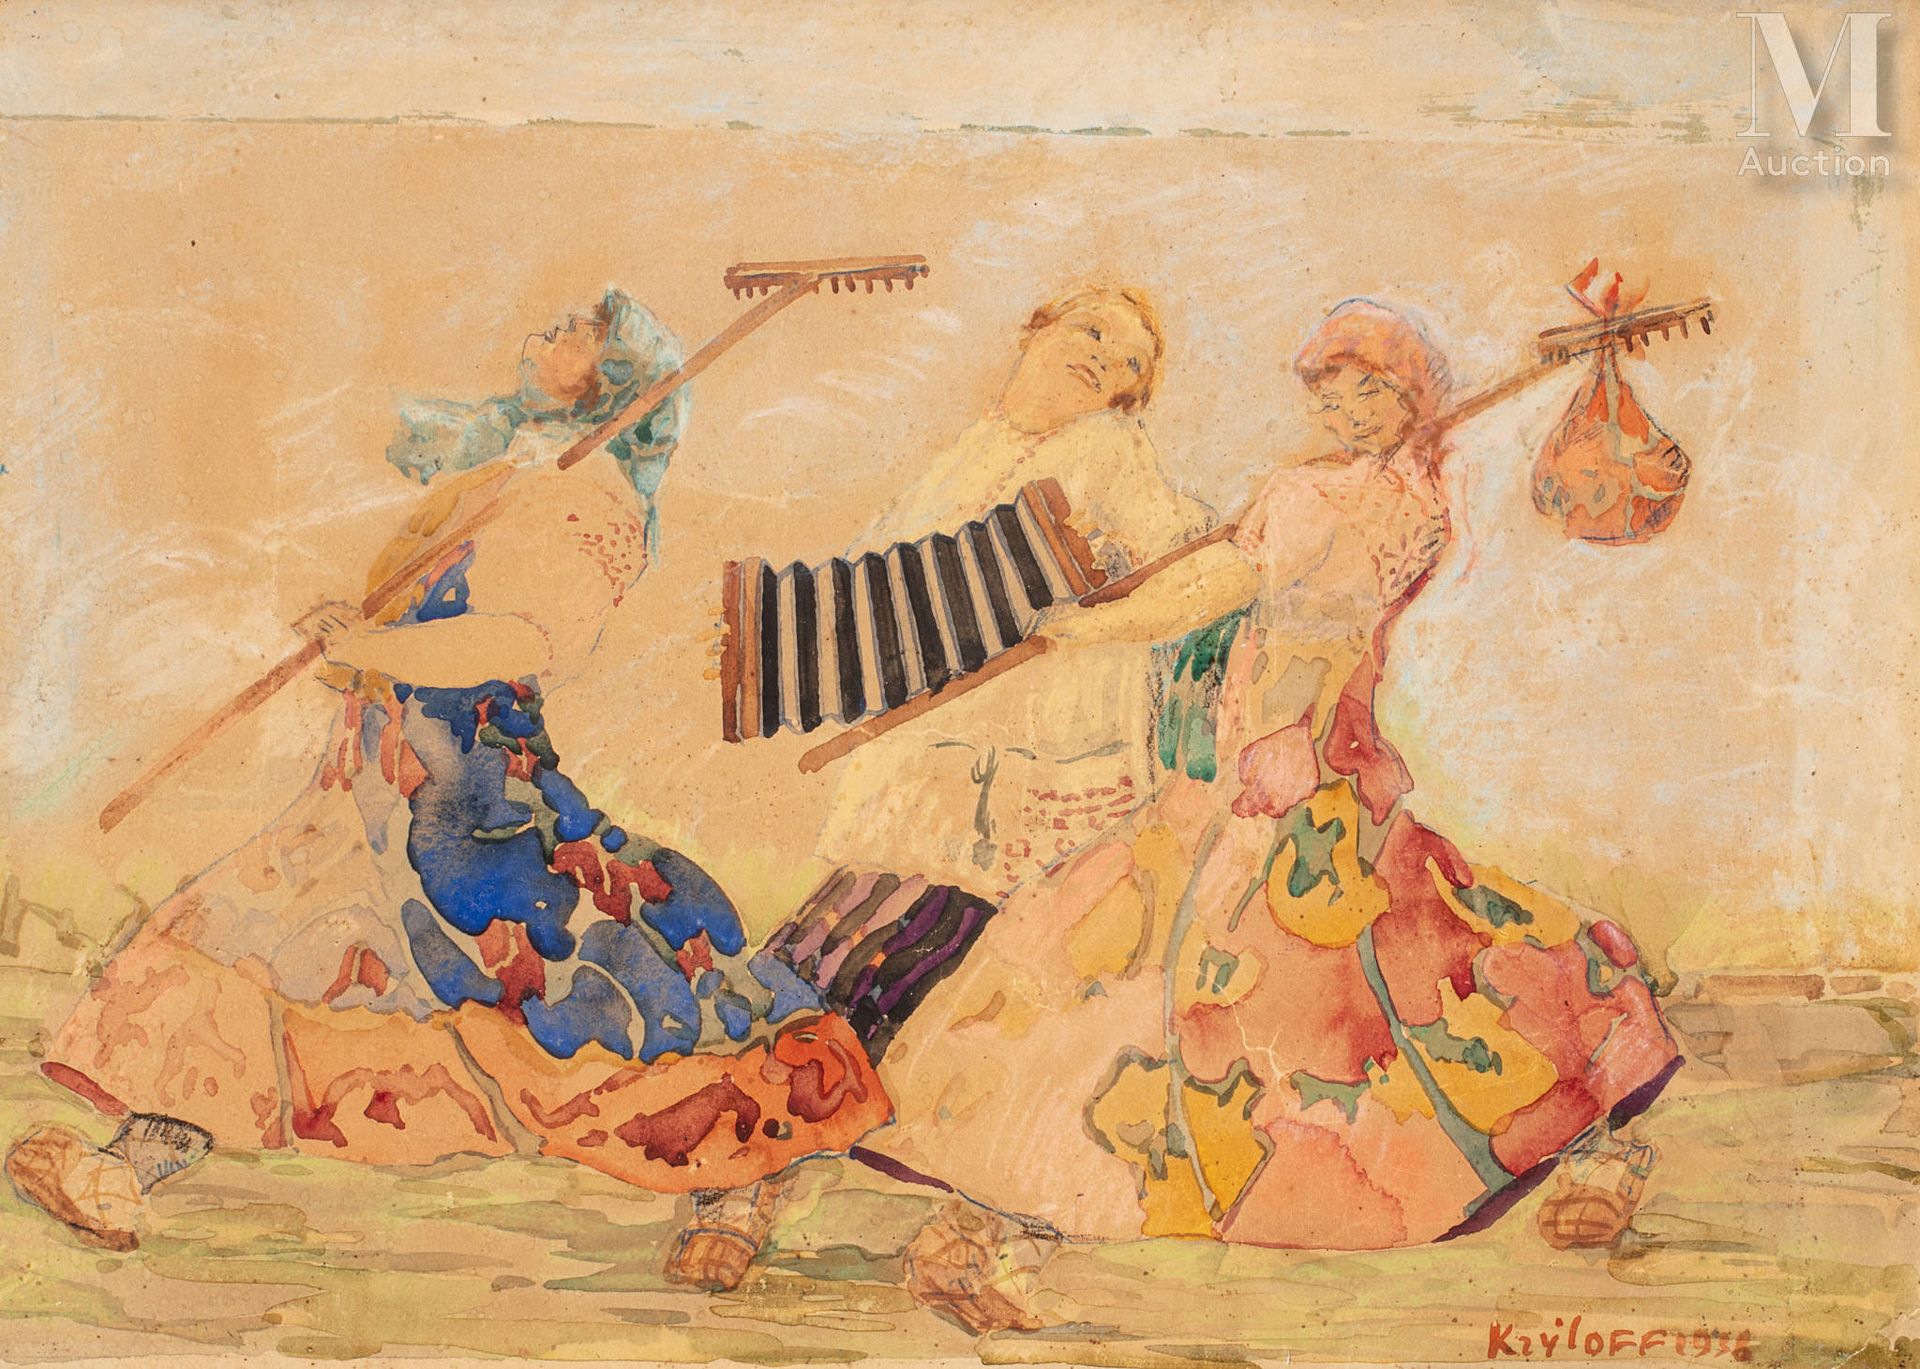 Boris KRYLOFF (Moscou 1891 - Copenhague 1977) El bandoneonista y las campesinas
&hellip;